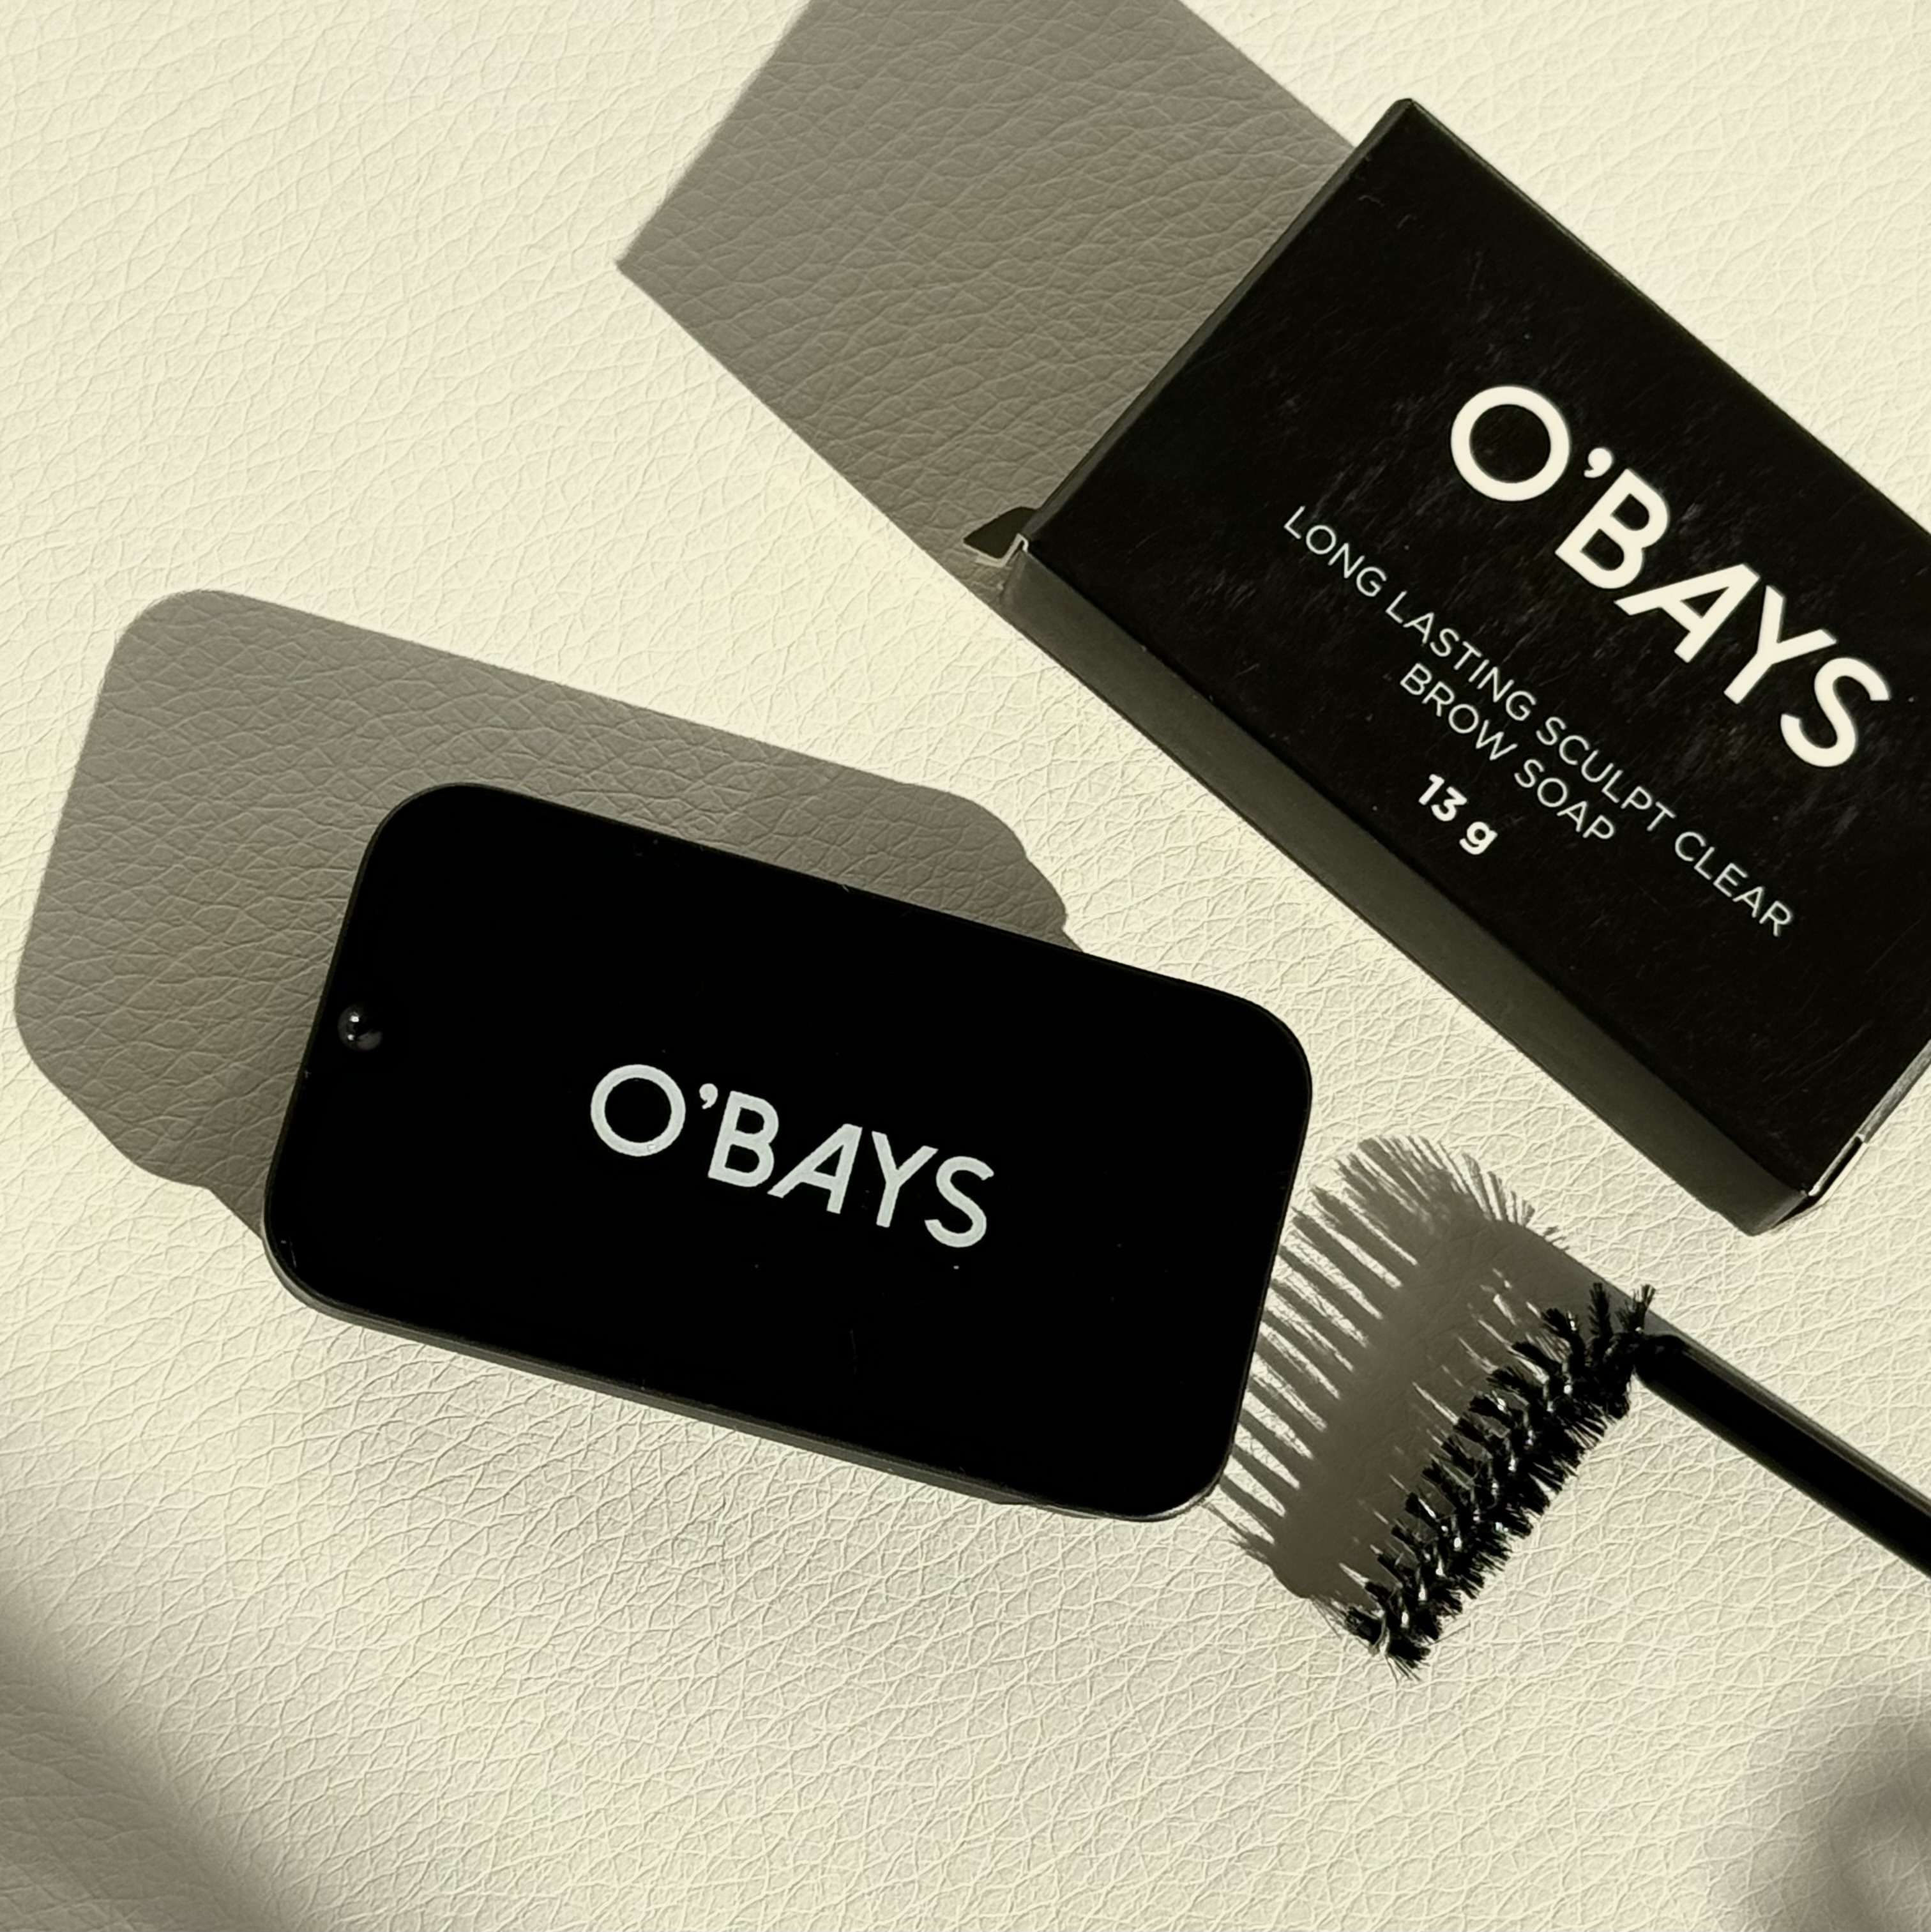 O’BAYS Long-Lasting Brow Soap